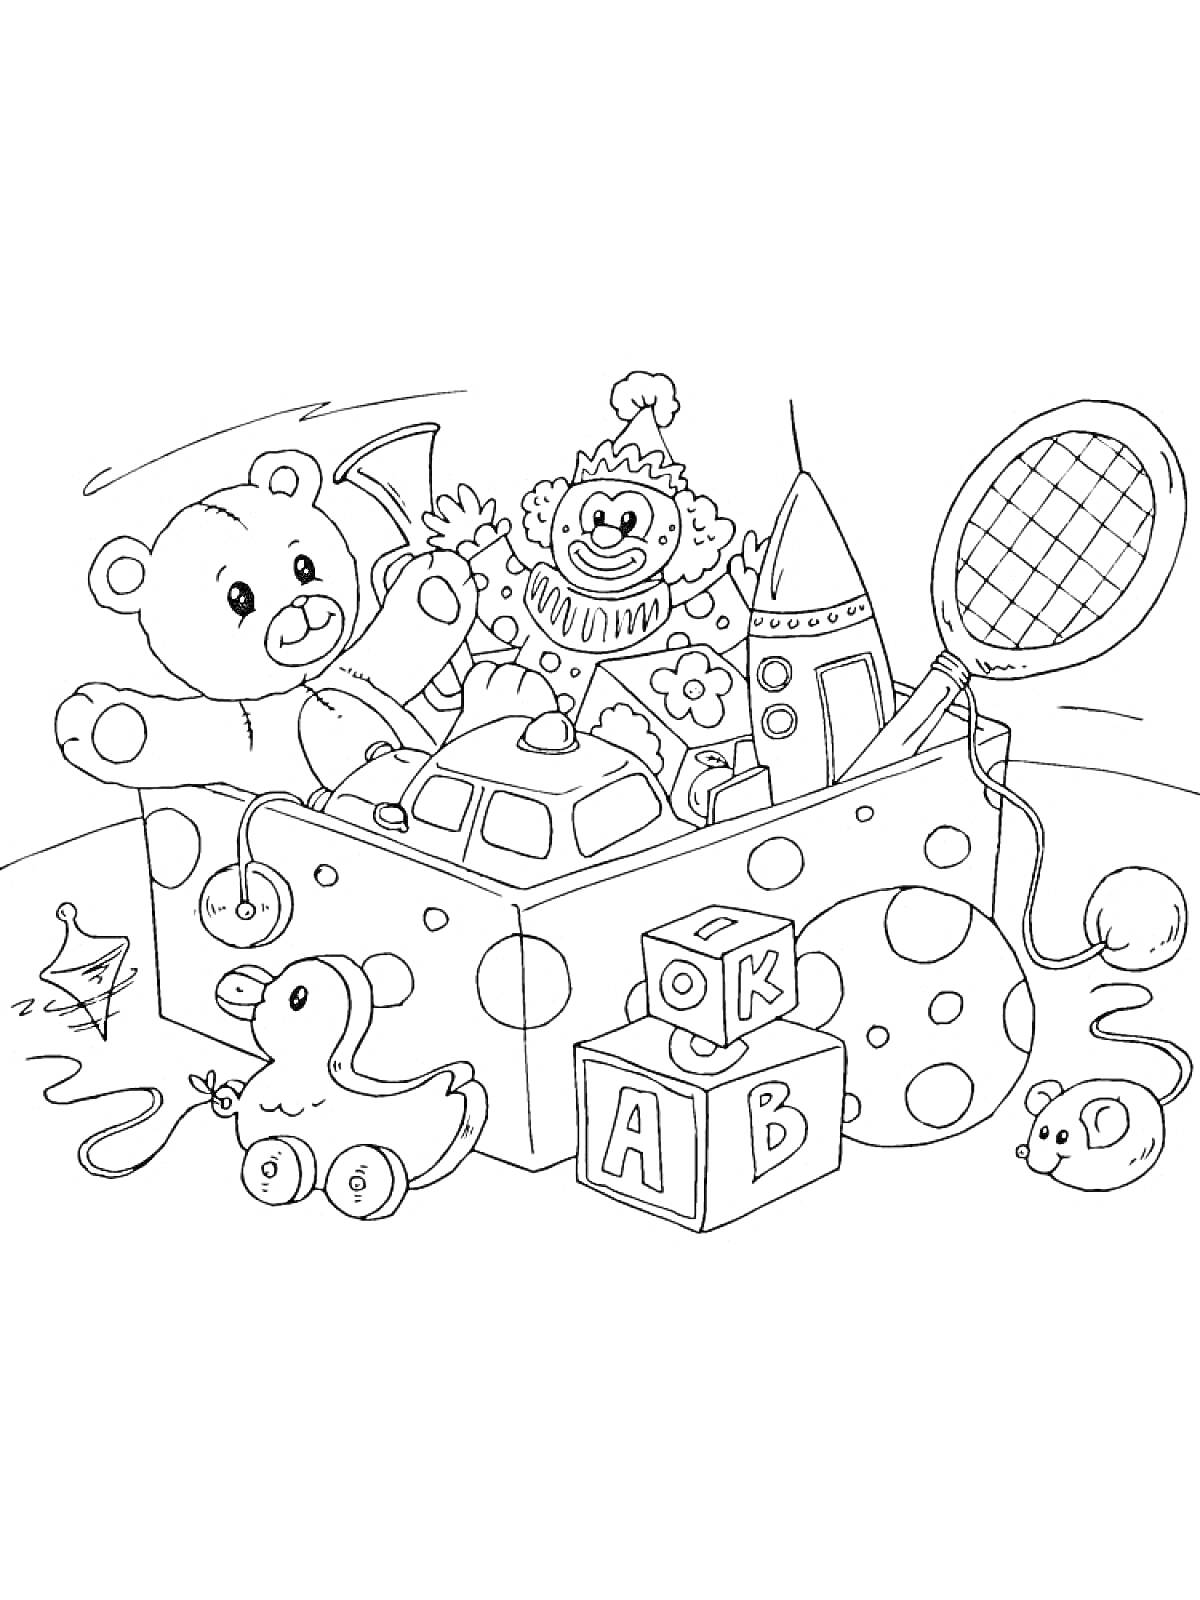 Раскраска Коробка с игрушками (медвежонок, игрушечный клоун, ракета, ракетка, утиный игрушечный кабриолет, кубики с буквами, мышь, волчок)